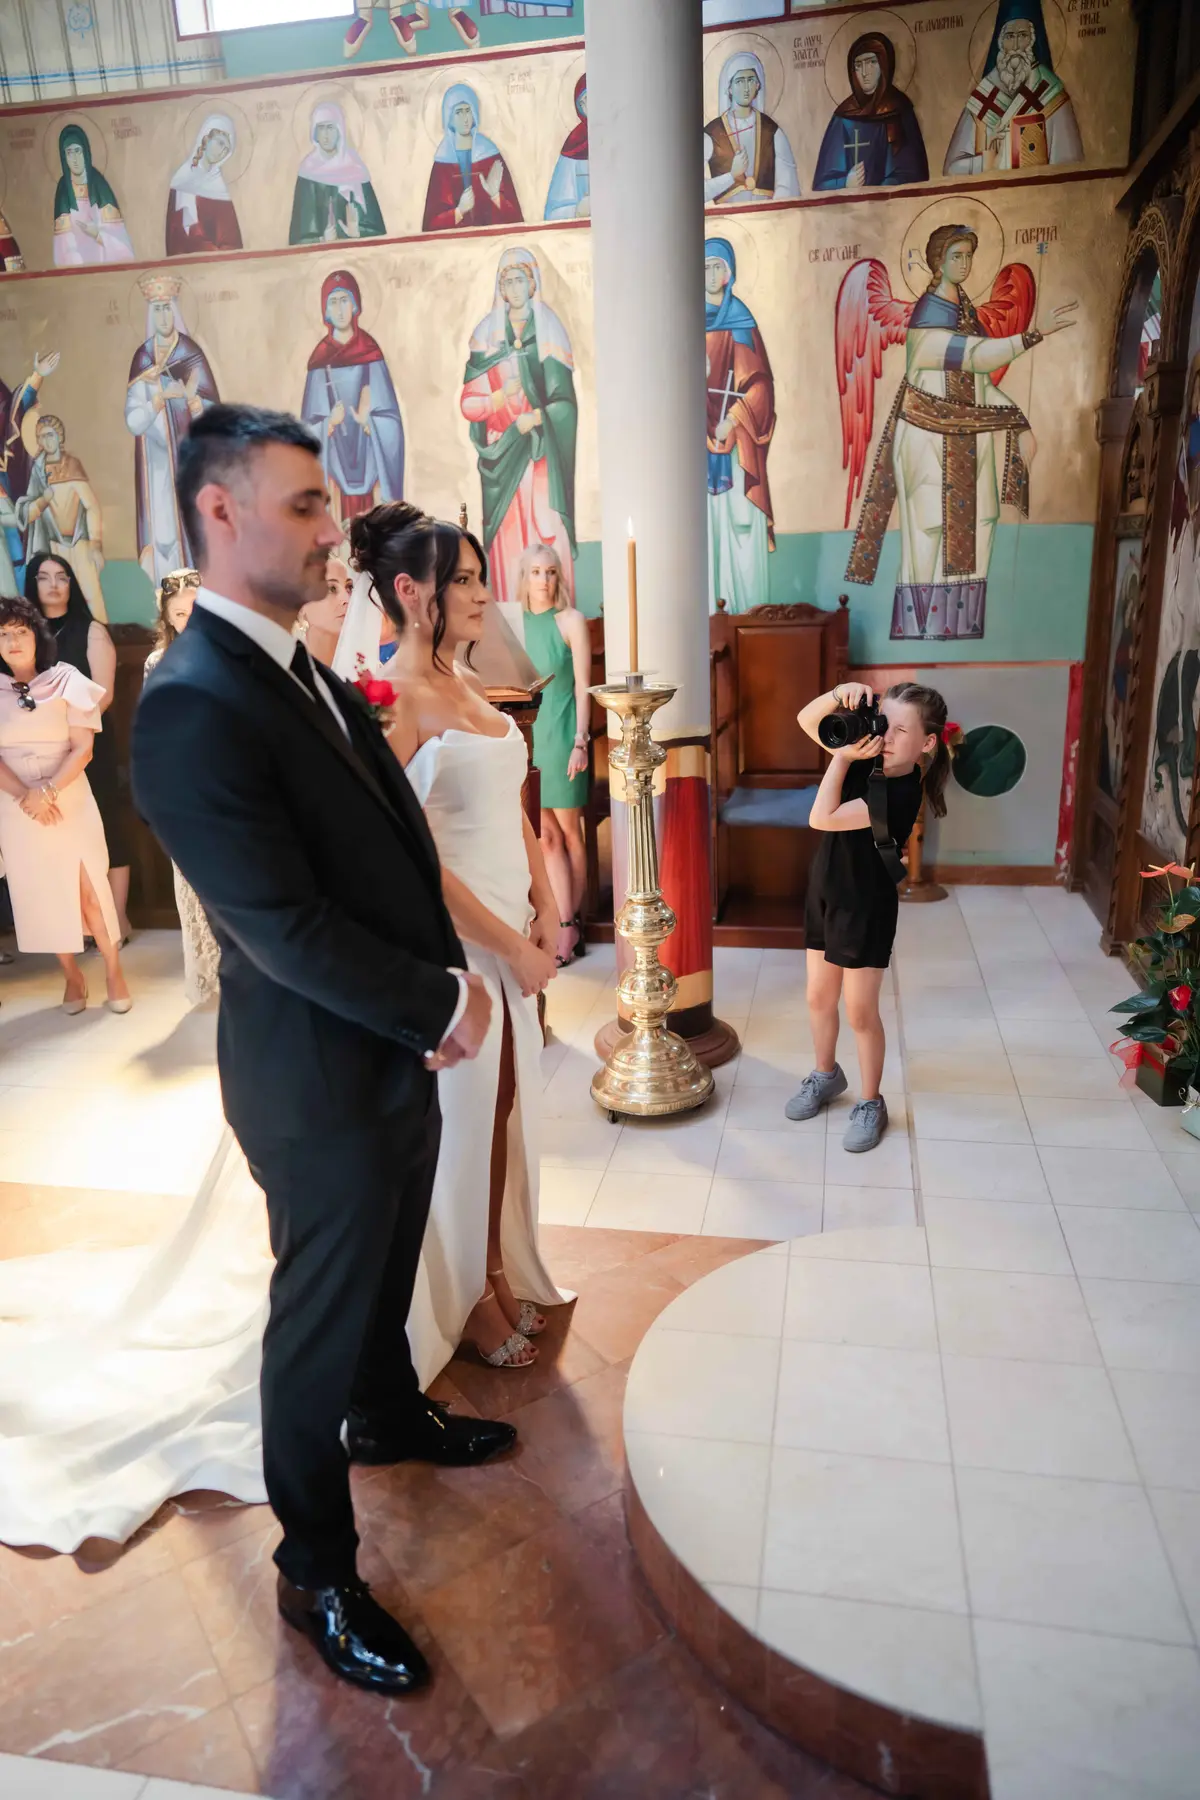 Отец-фотограф позволил девятилетней дочери провести свадебную фотосессию — результаты поразили всех